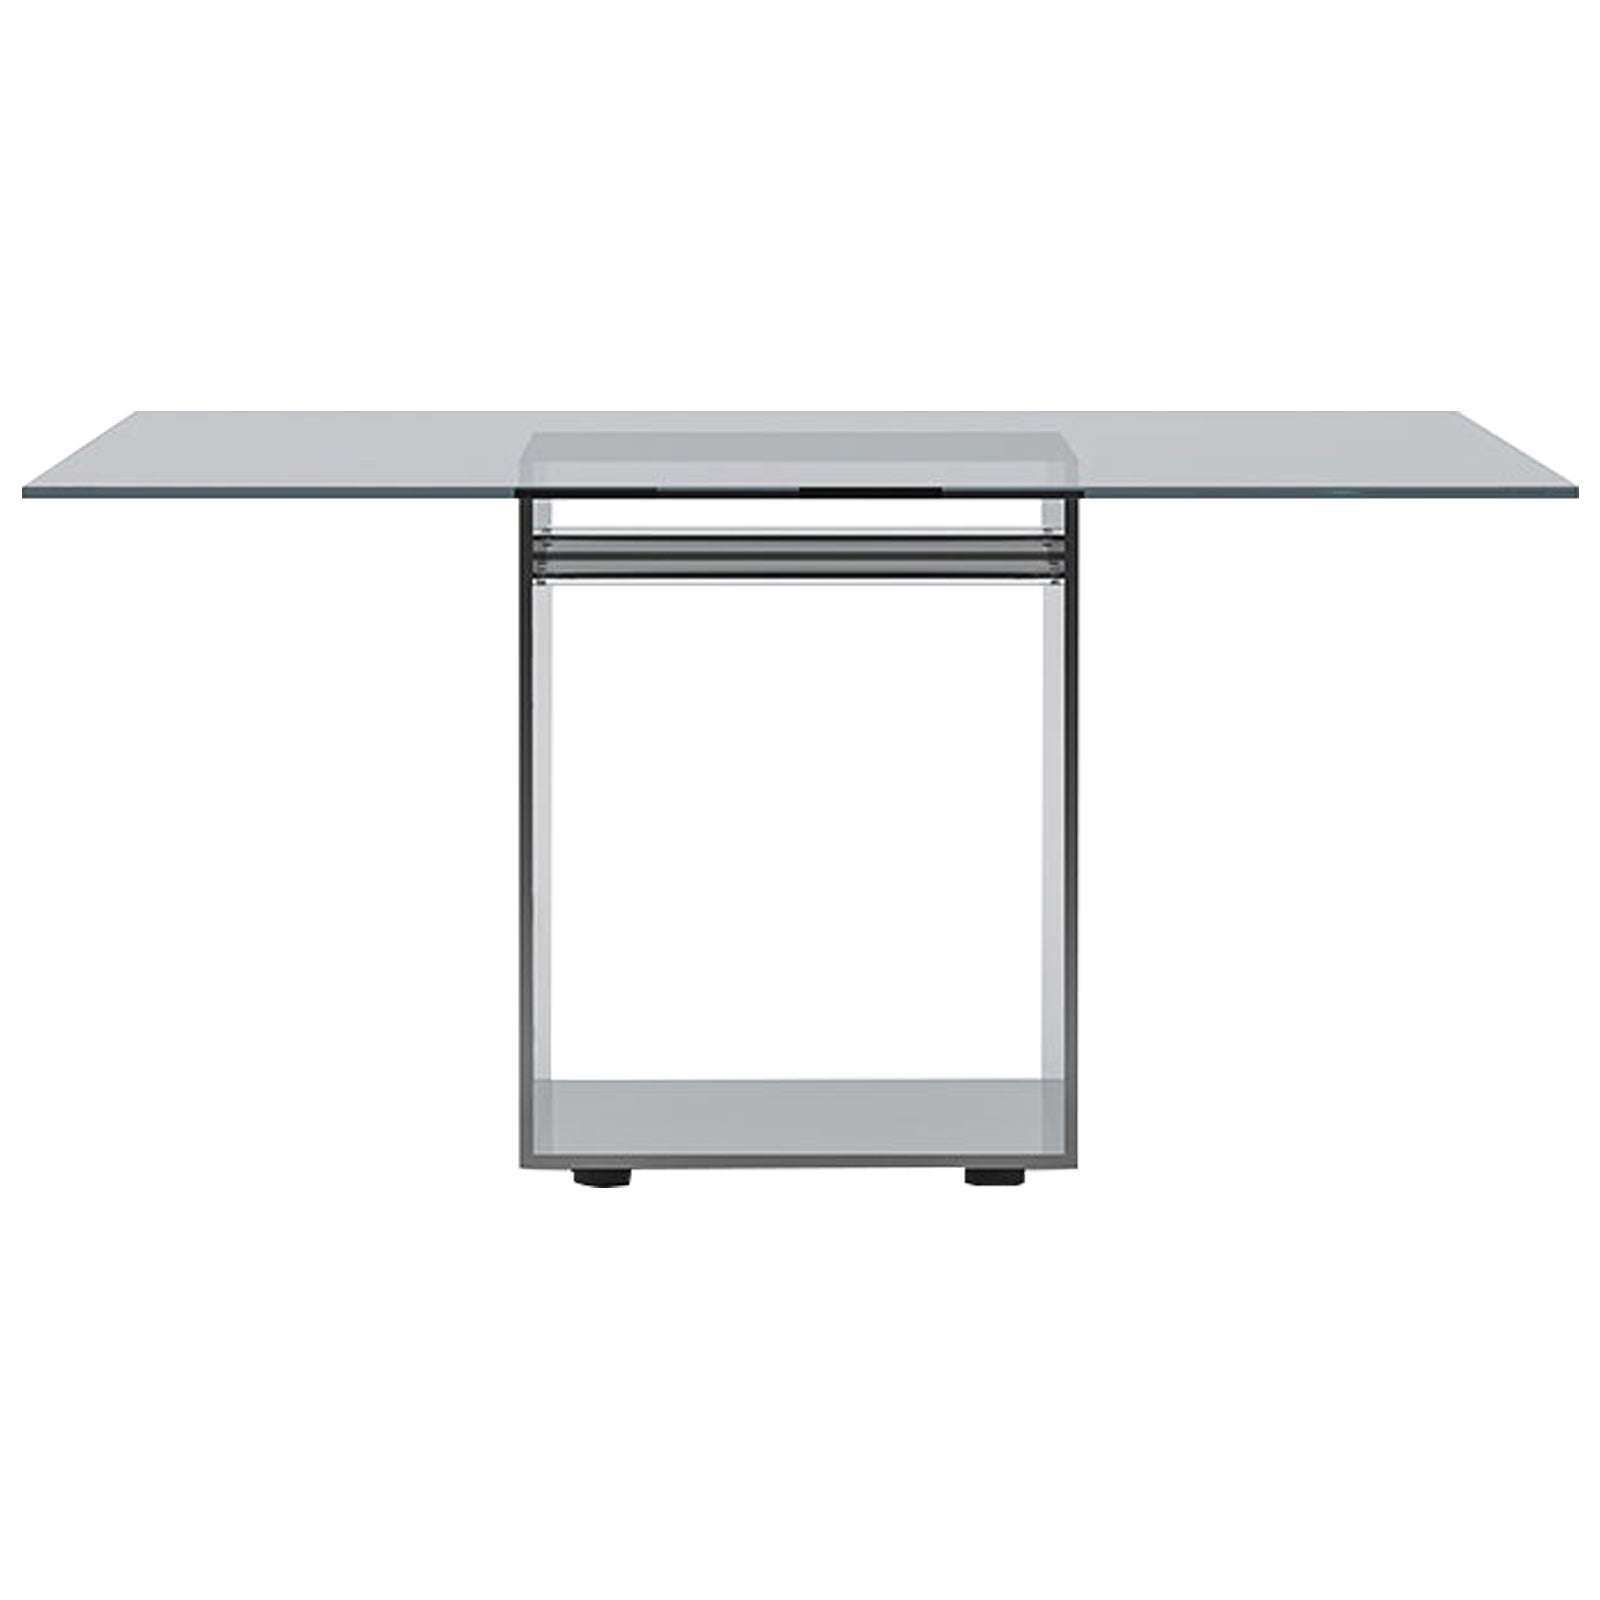 Acerbis Judd, petite table carrée avec plateau en verre transparent et base en acier brillant